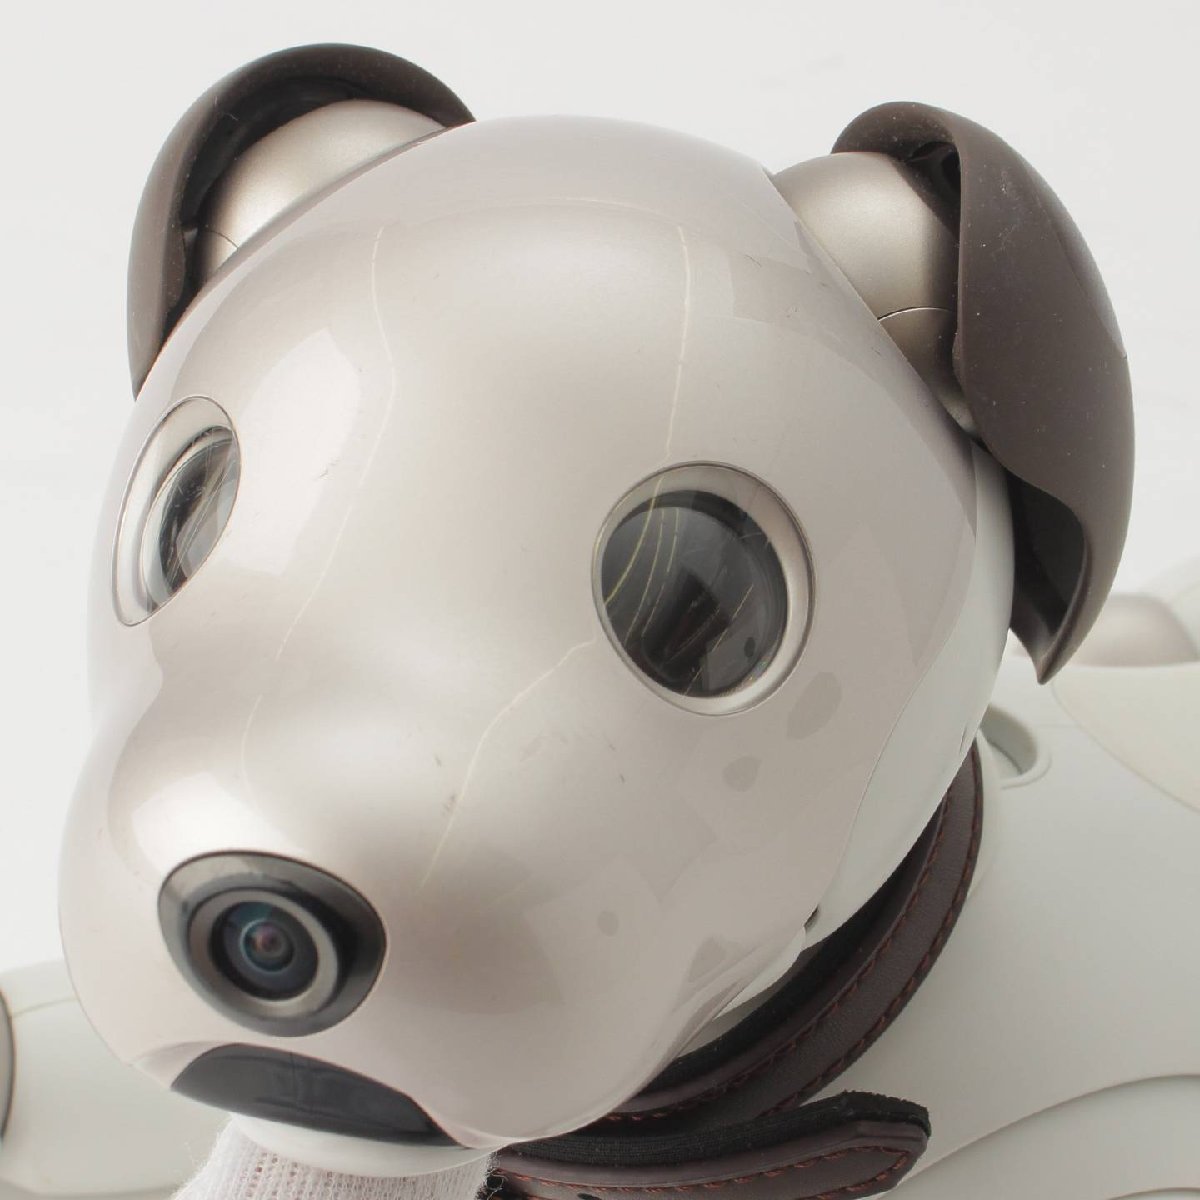 【ソニー】SONY　犬型 バーチャルペット ロボット aibo アイボ ERS-1000 ホワイト 【正規品保証】184254